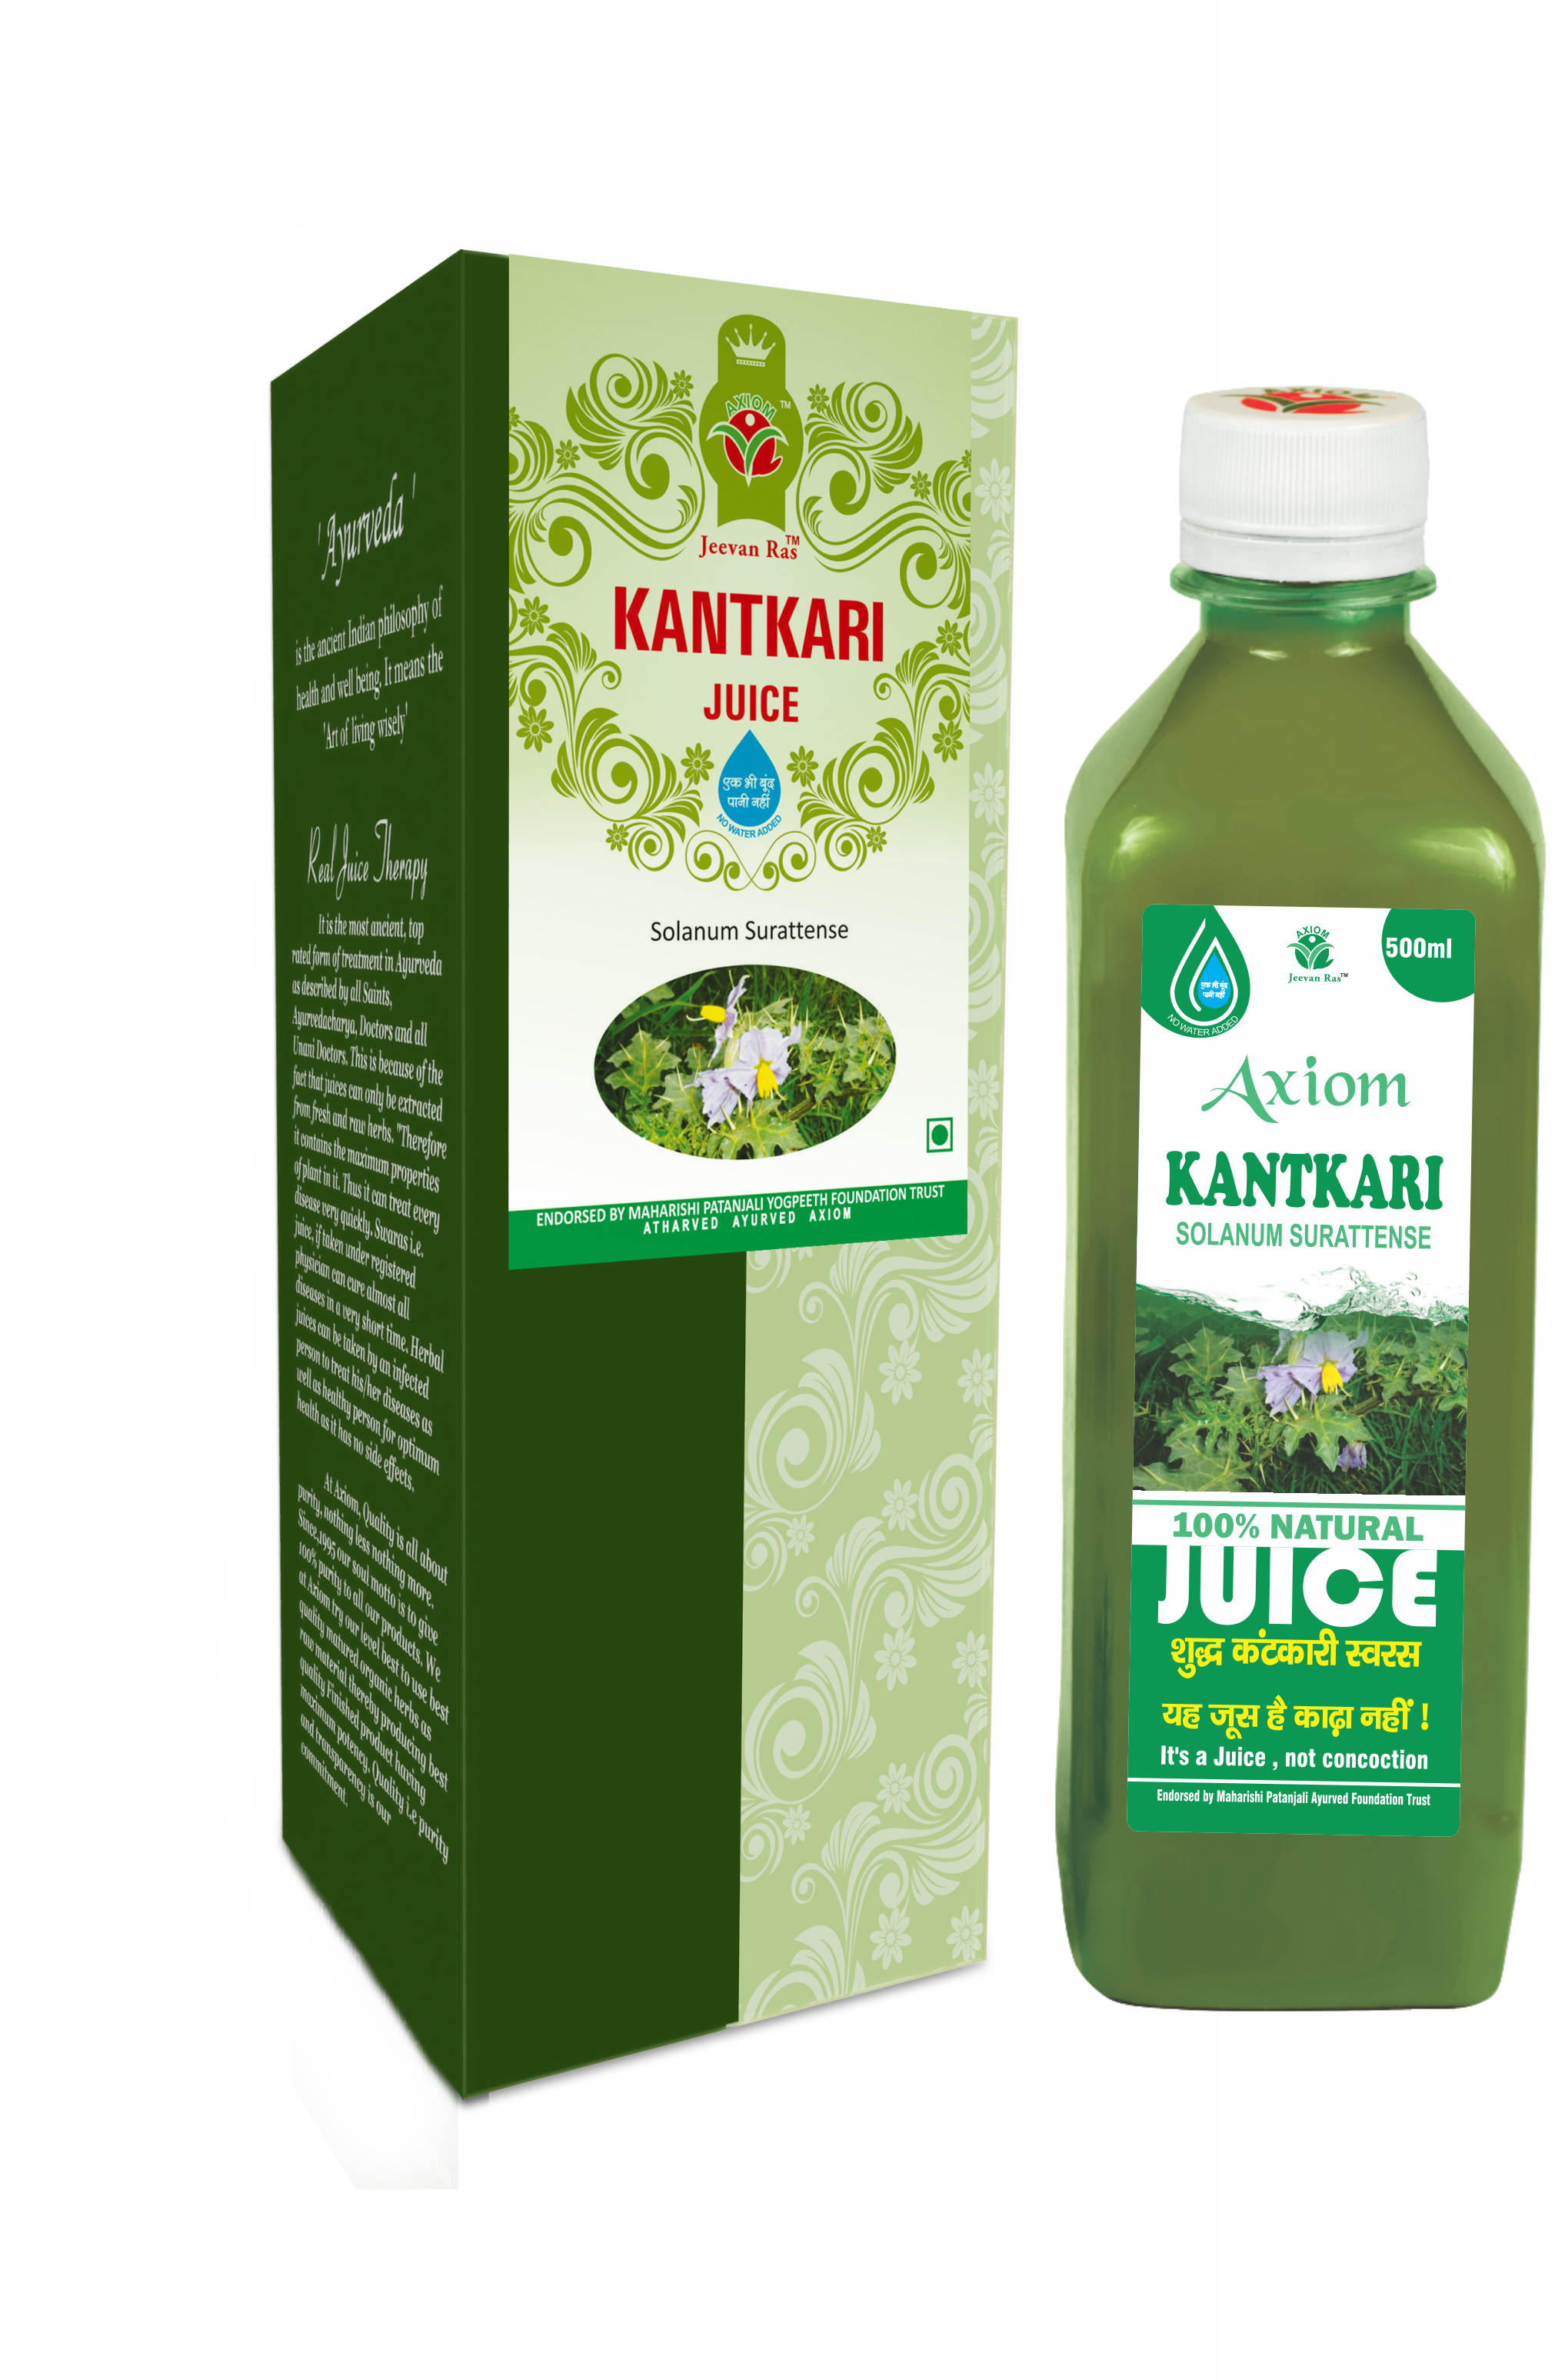 Axiom Kantkari Juice